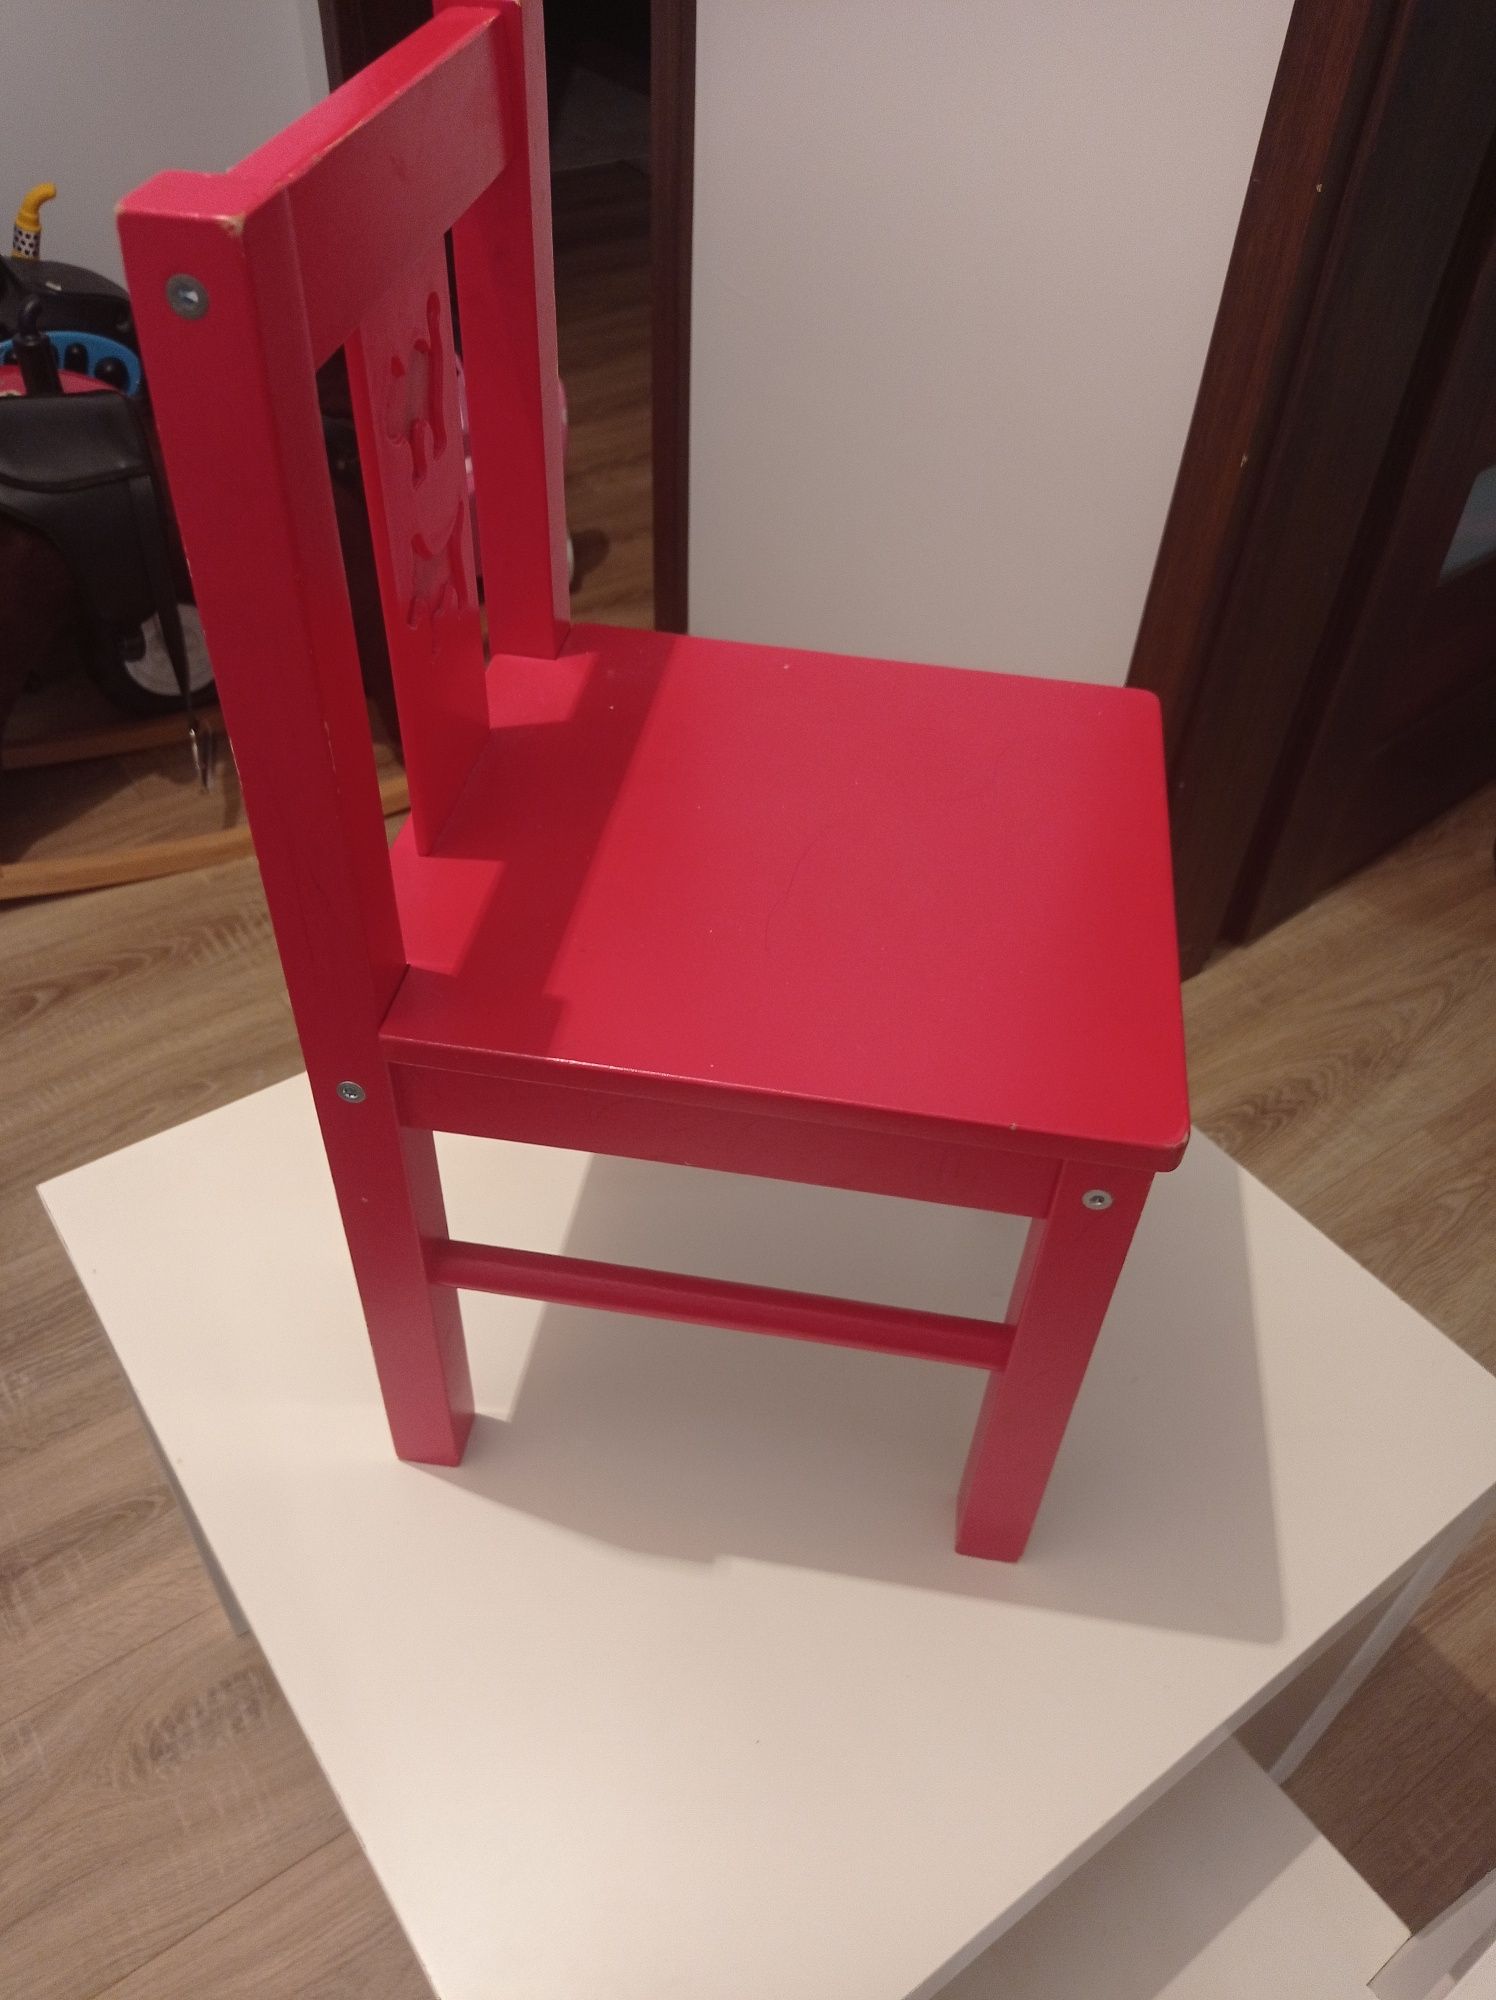 Stolik drewniany plus dwa krzesła również drewniane